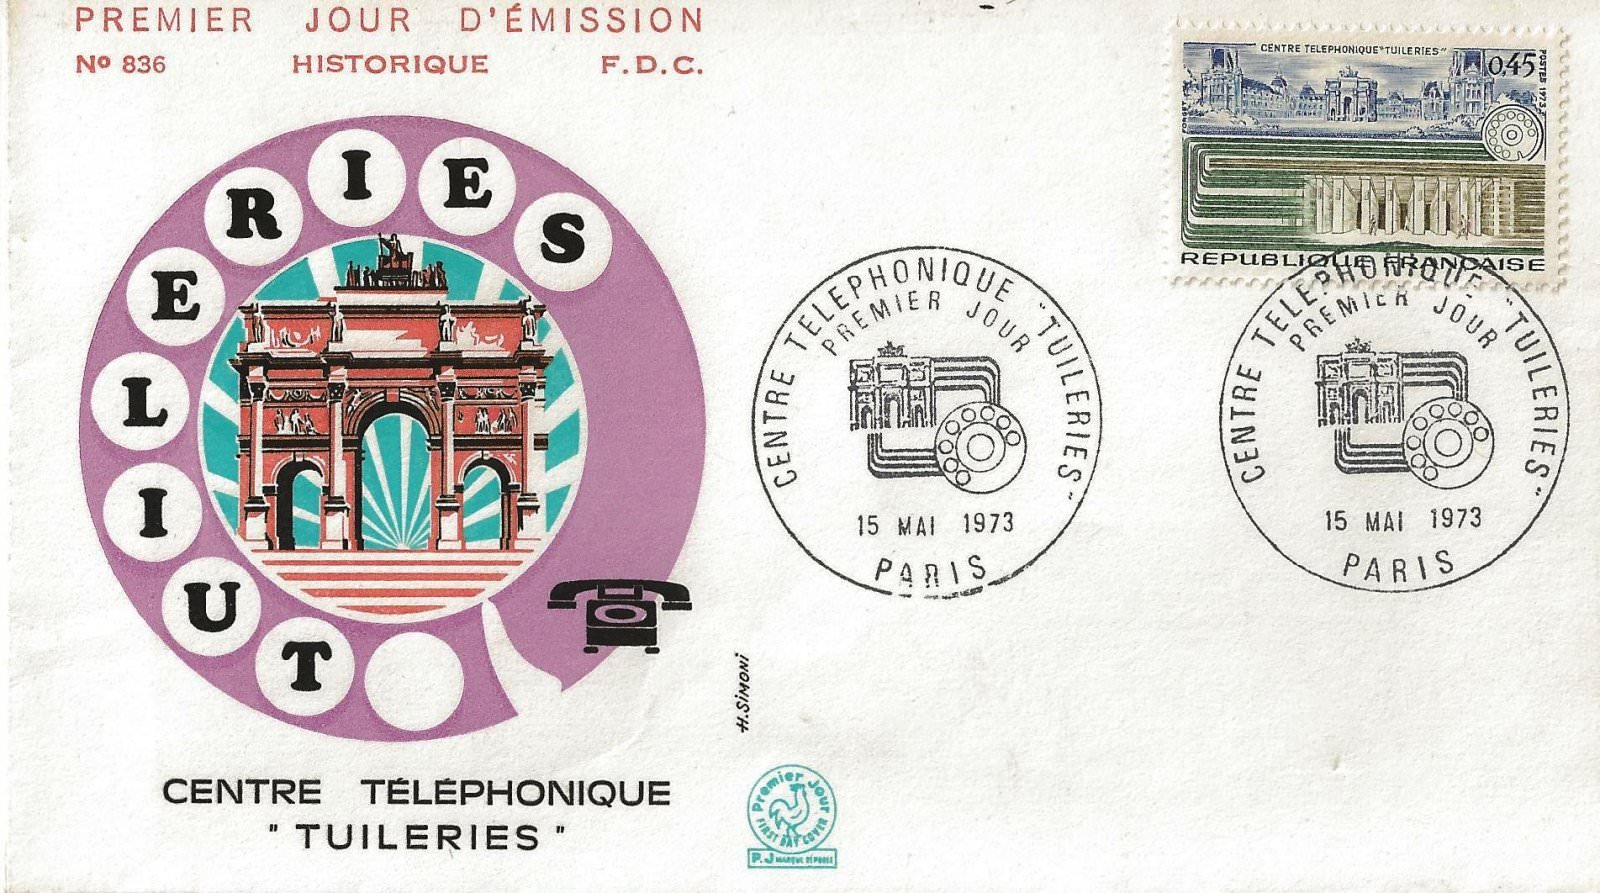 1973 centre téléphonique des tuileries